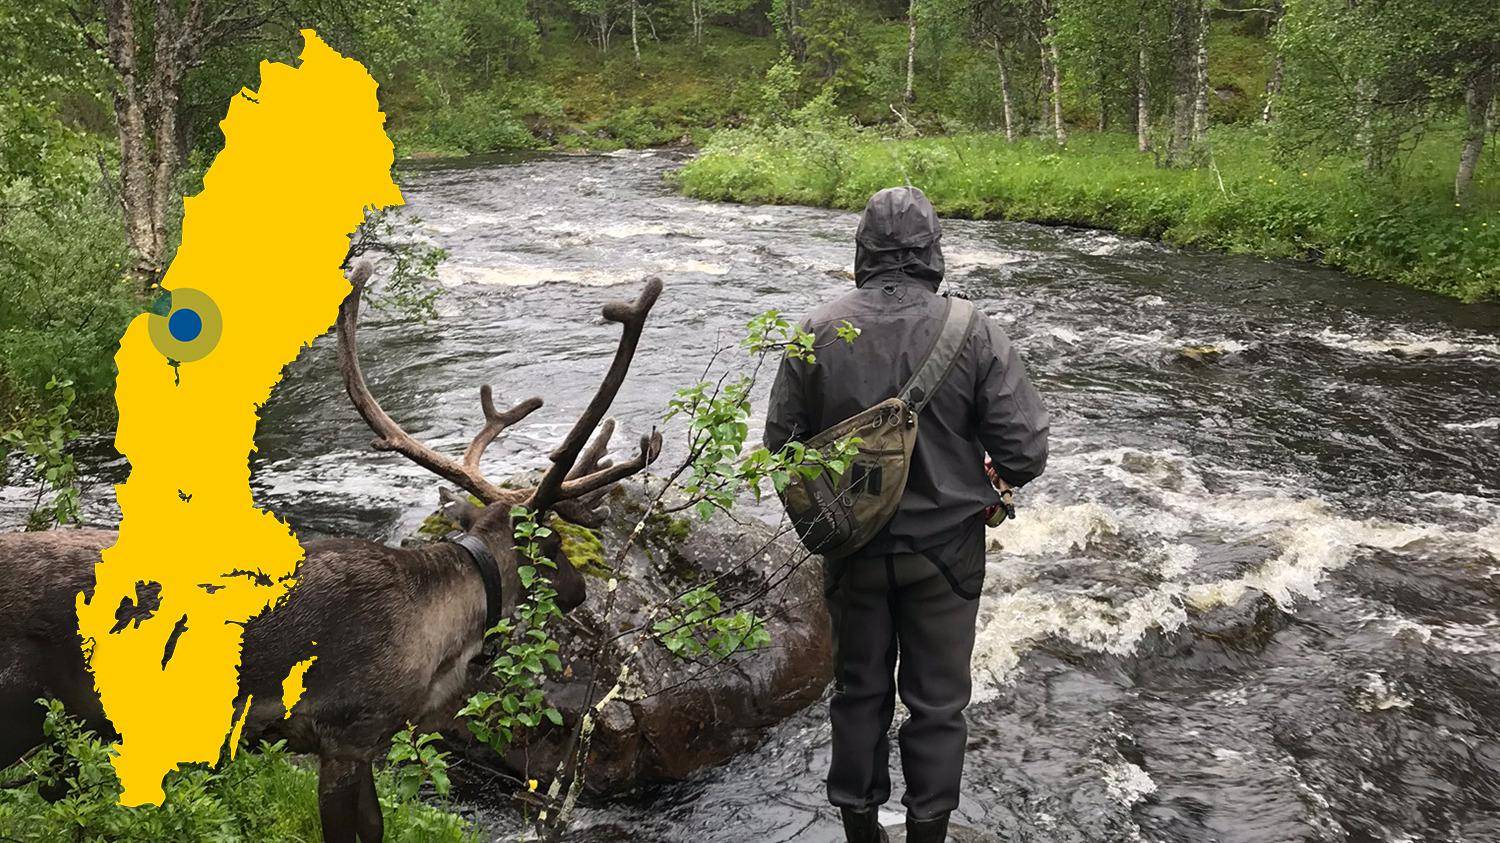 Een rendier en een persoon die naar een rivier kijkt. Een gele kaart van Zweden met een markering met de plaats van Laxviken is in de afbeelding geplaatst.